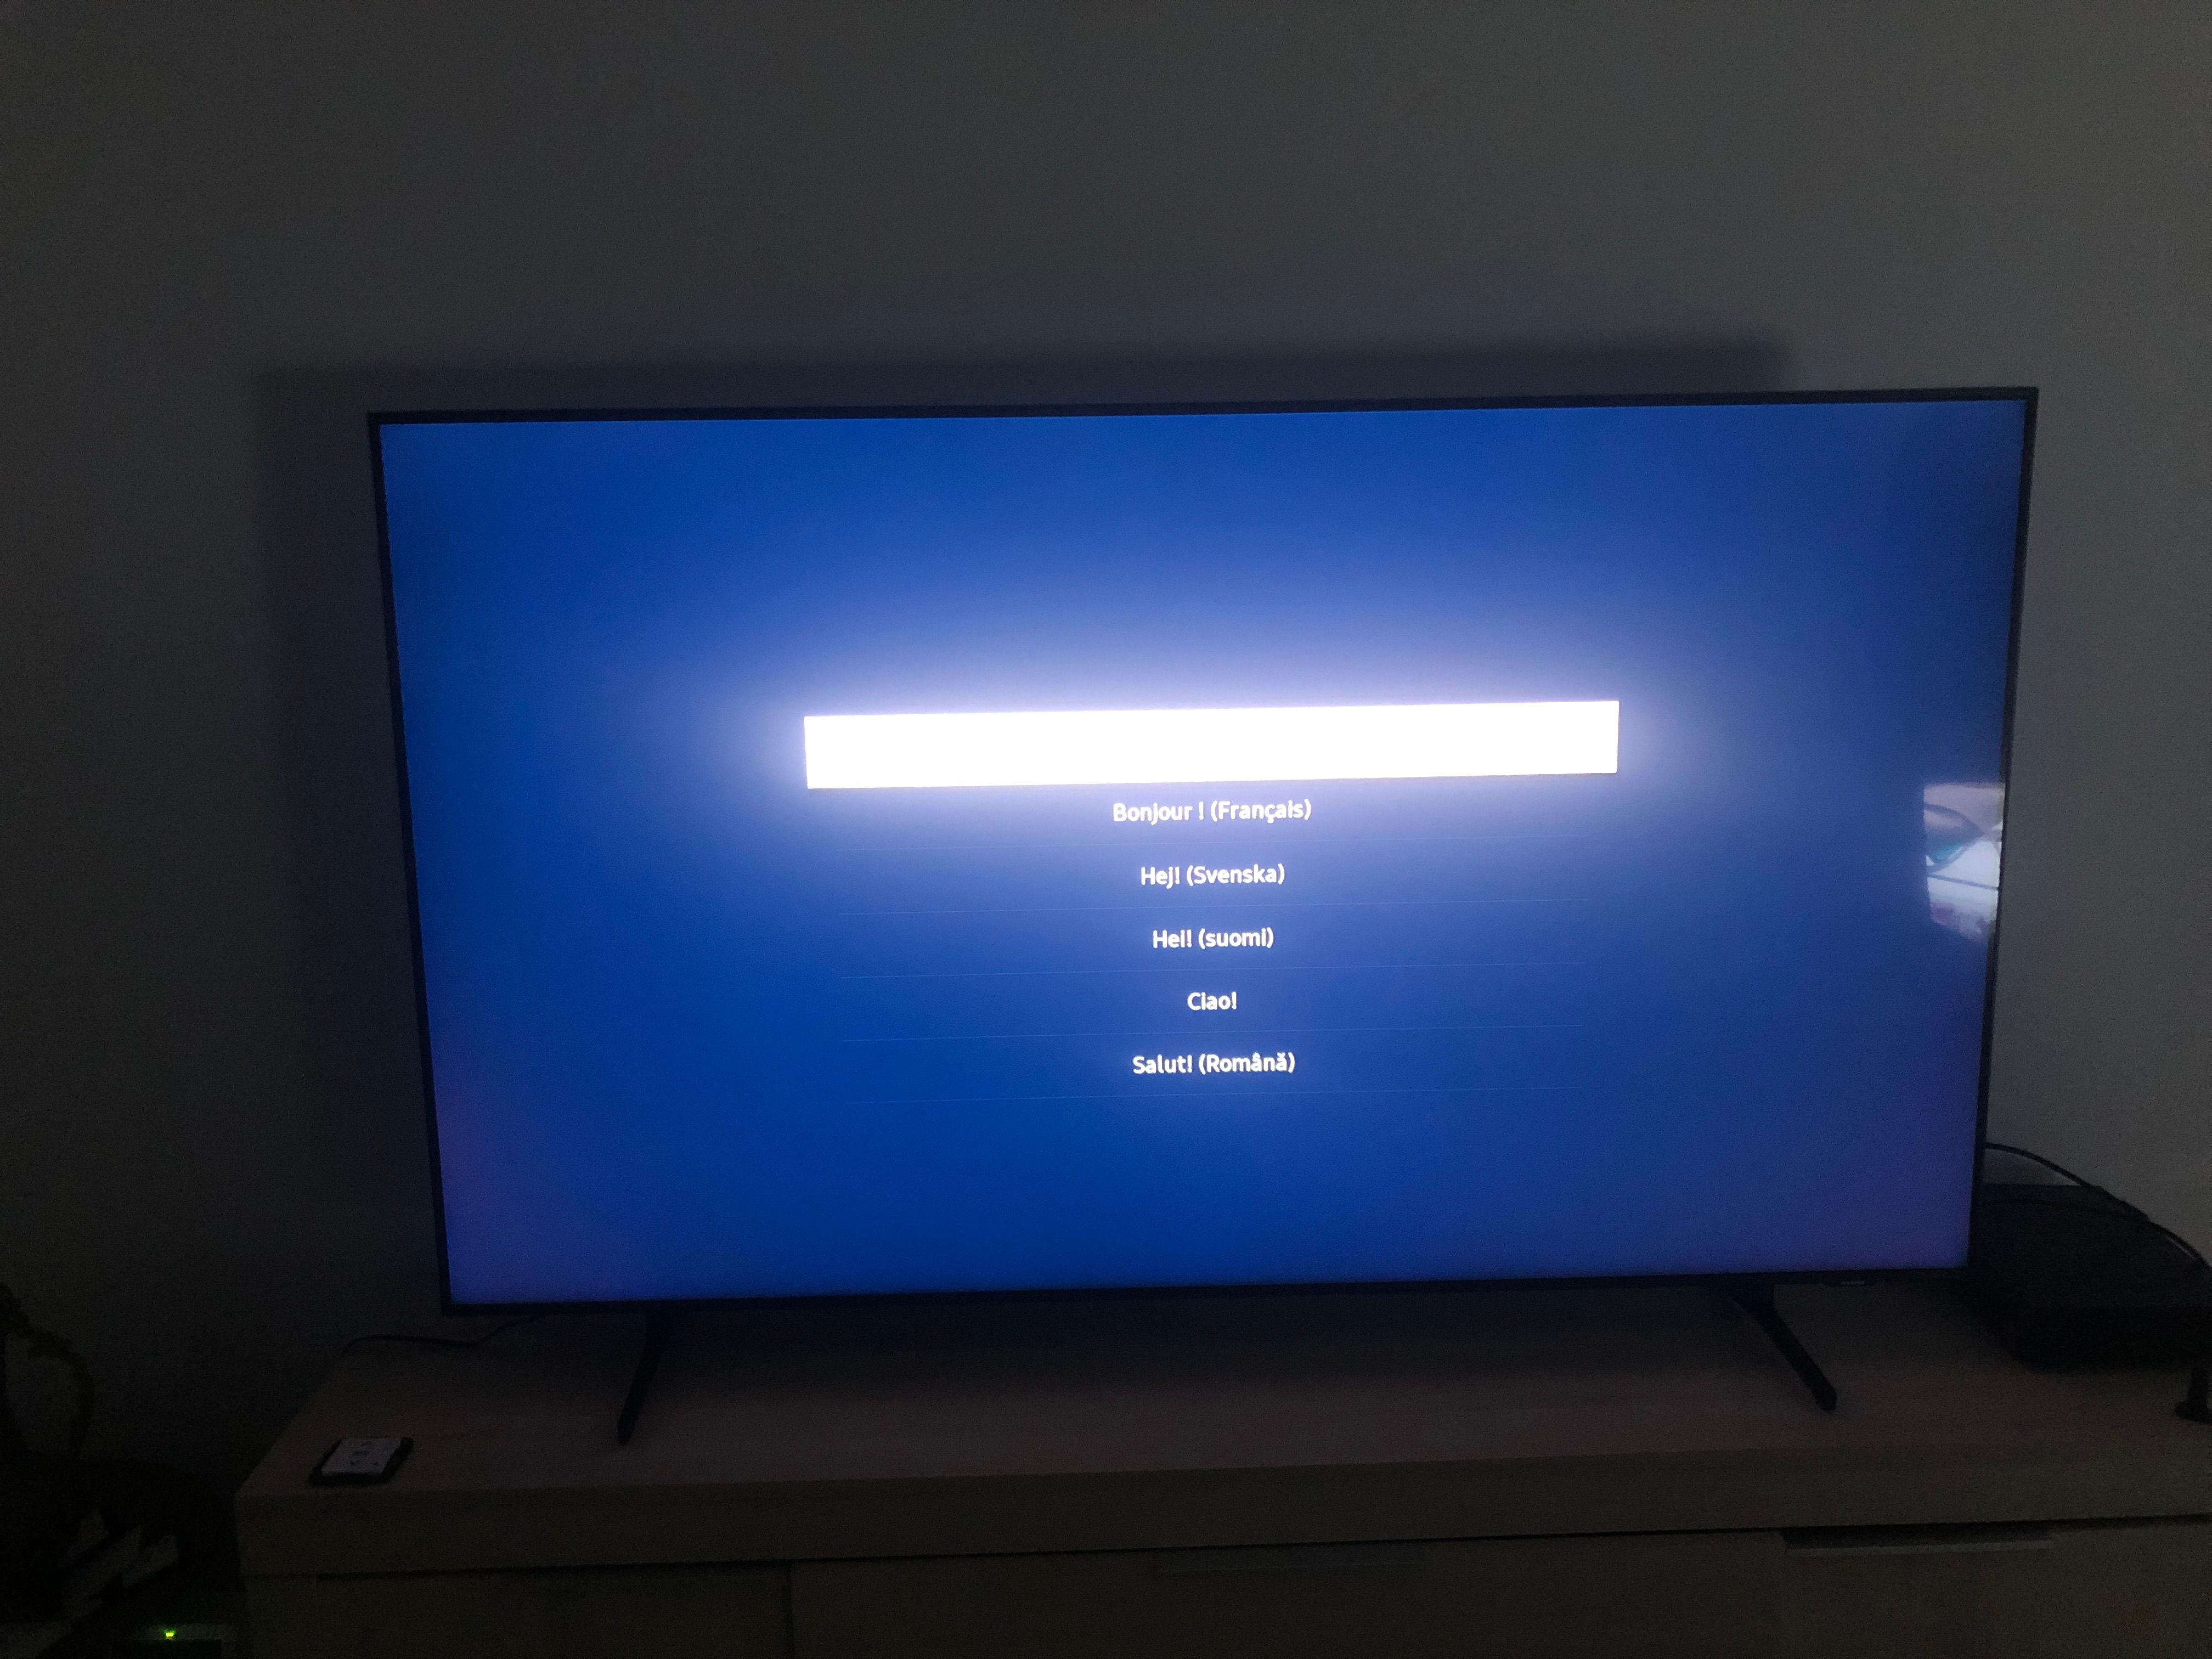 Télé Q60a bloque dès le démarrage - Samsung Community